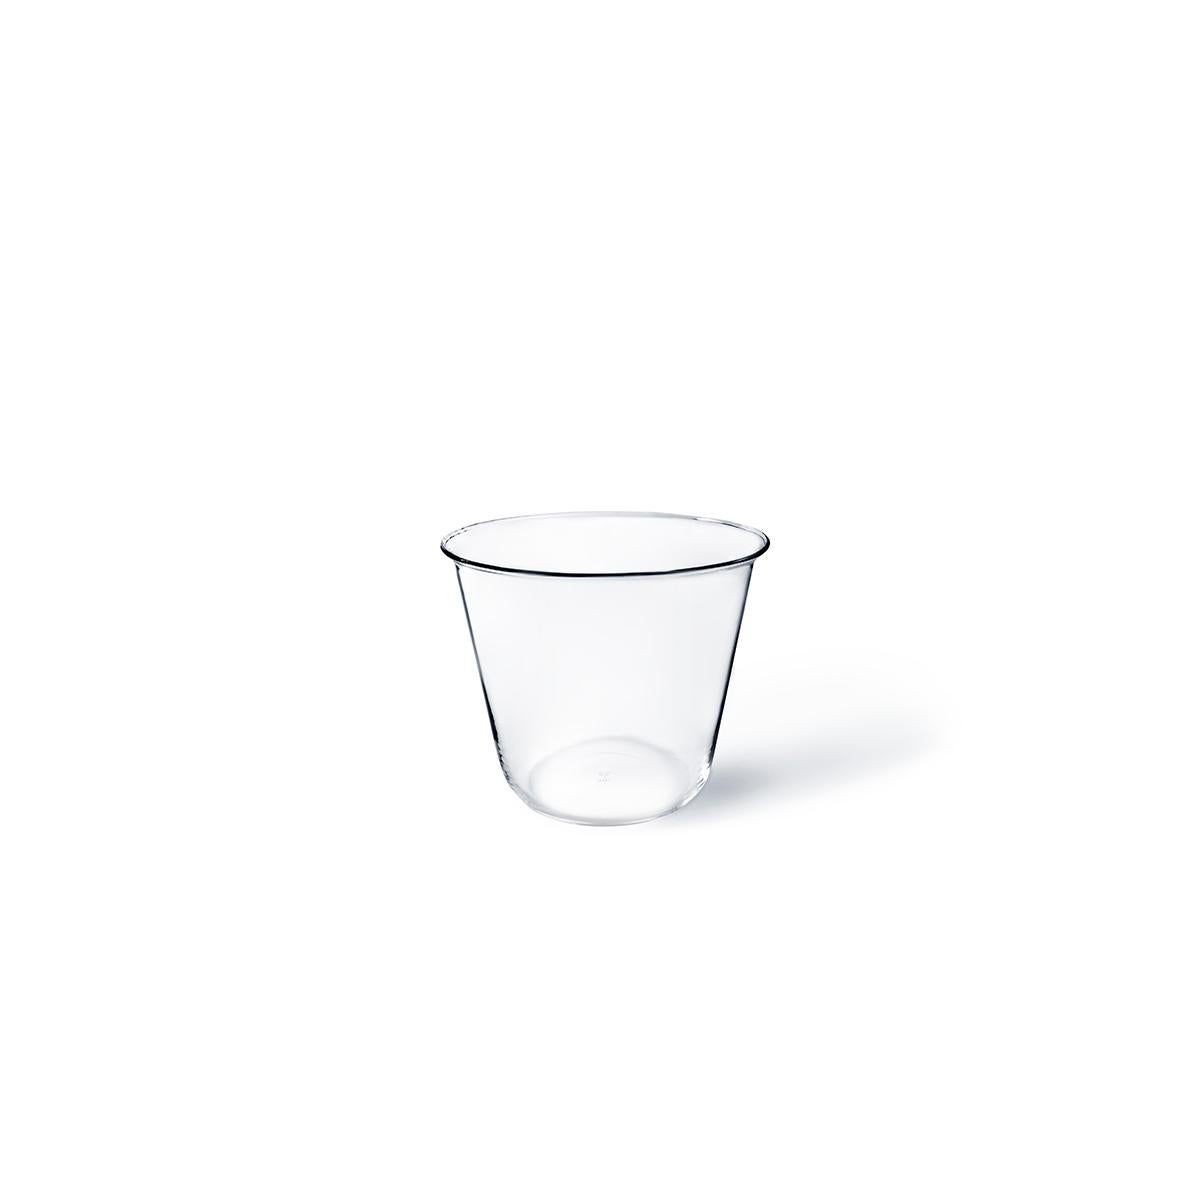 Campana es un jarrón de vidrio soplado en molde diseñado por Aldo Cibic, un objeto útil y versátil que puede ser tanto florero como cubitera. Su silueta sencilla y elegante la convierte en un artículo adecuado para todas las mesas, que no se somete